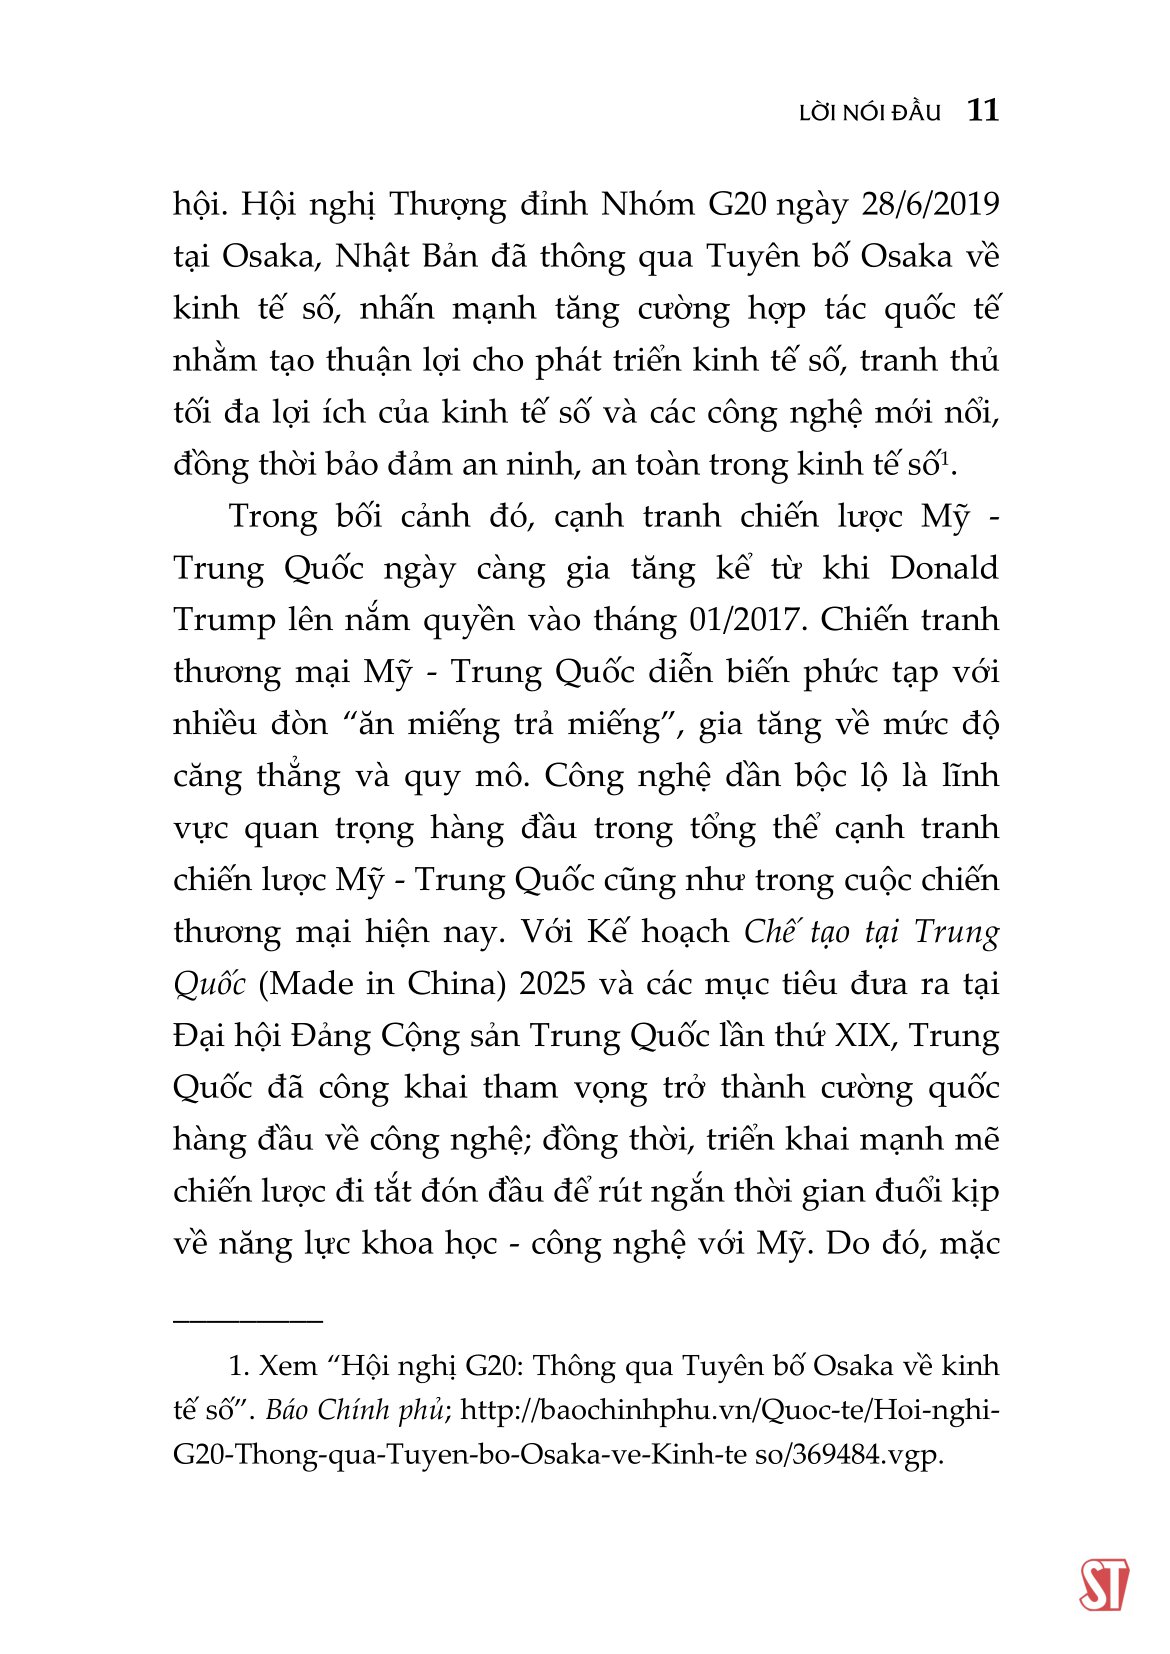 Cạnh Tranh Công Nghệ Mỹ - Trung Quốc Thời Đại 4.0 PDF